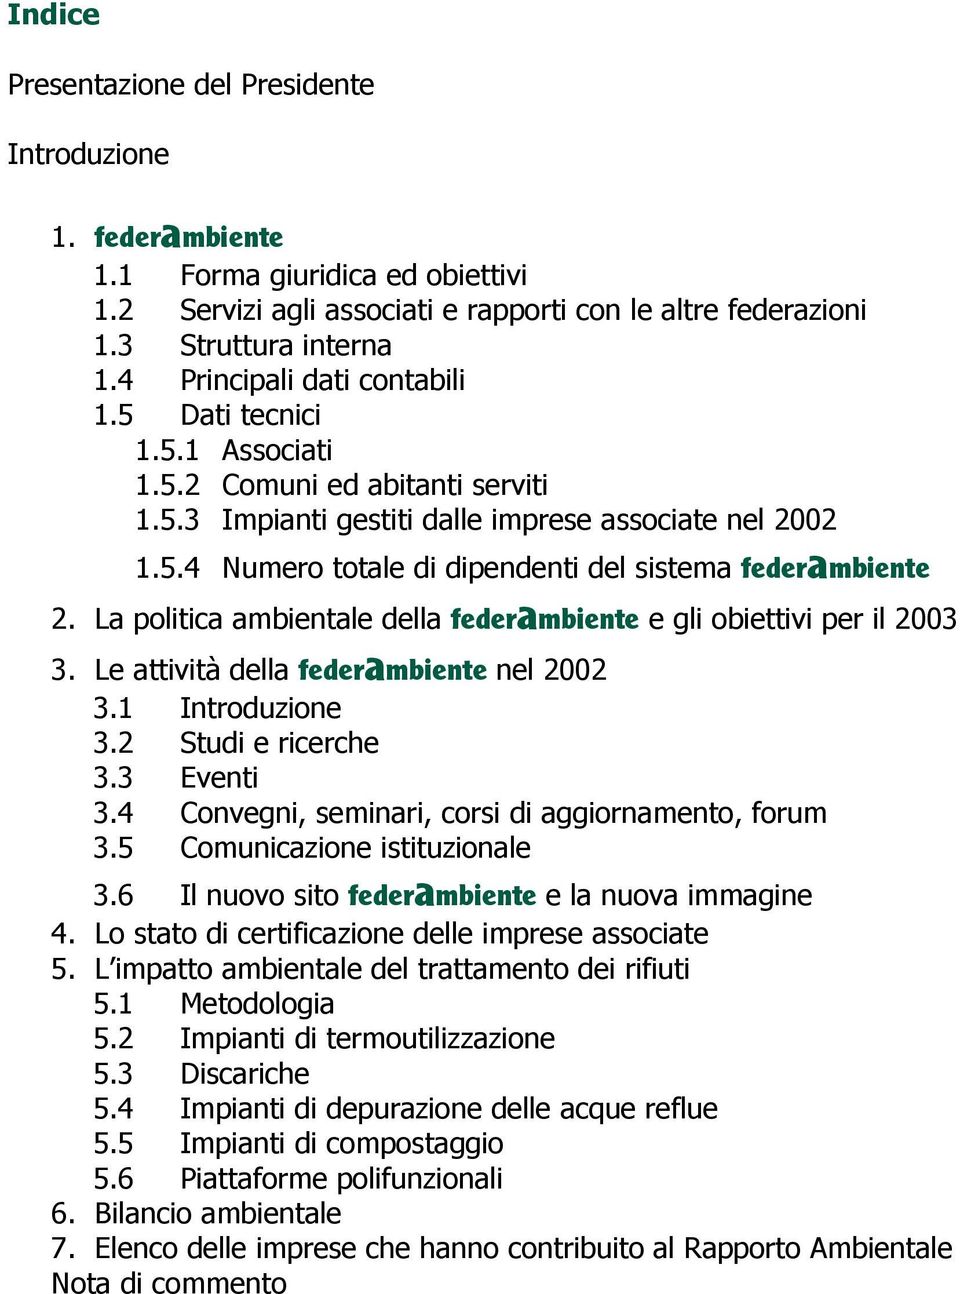 La politica ambientale della federambiente e gli obiettivi per il 2003 3. Le attività della federambiente nel 2002 3.1 Introduzione 3.2 Studi e ricerche 3.3 Eventi 3.